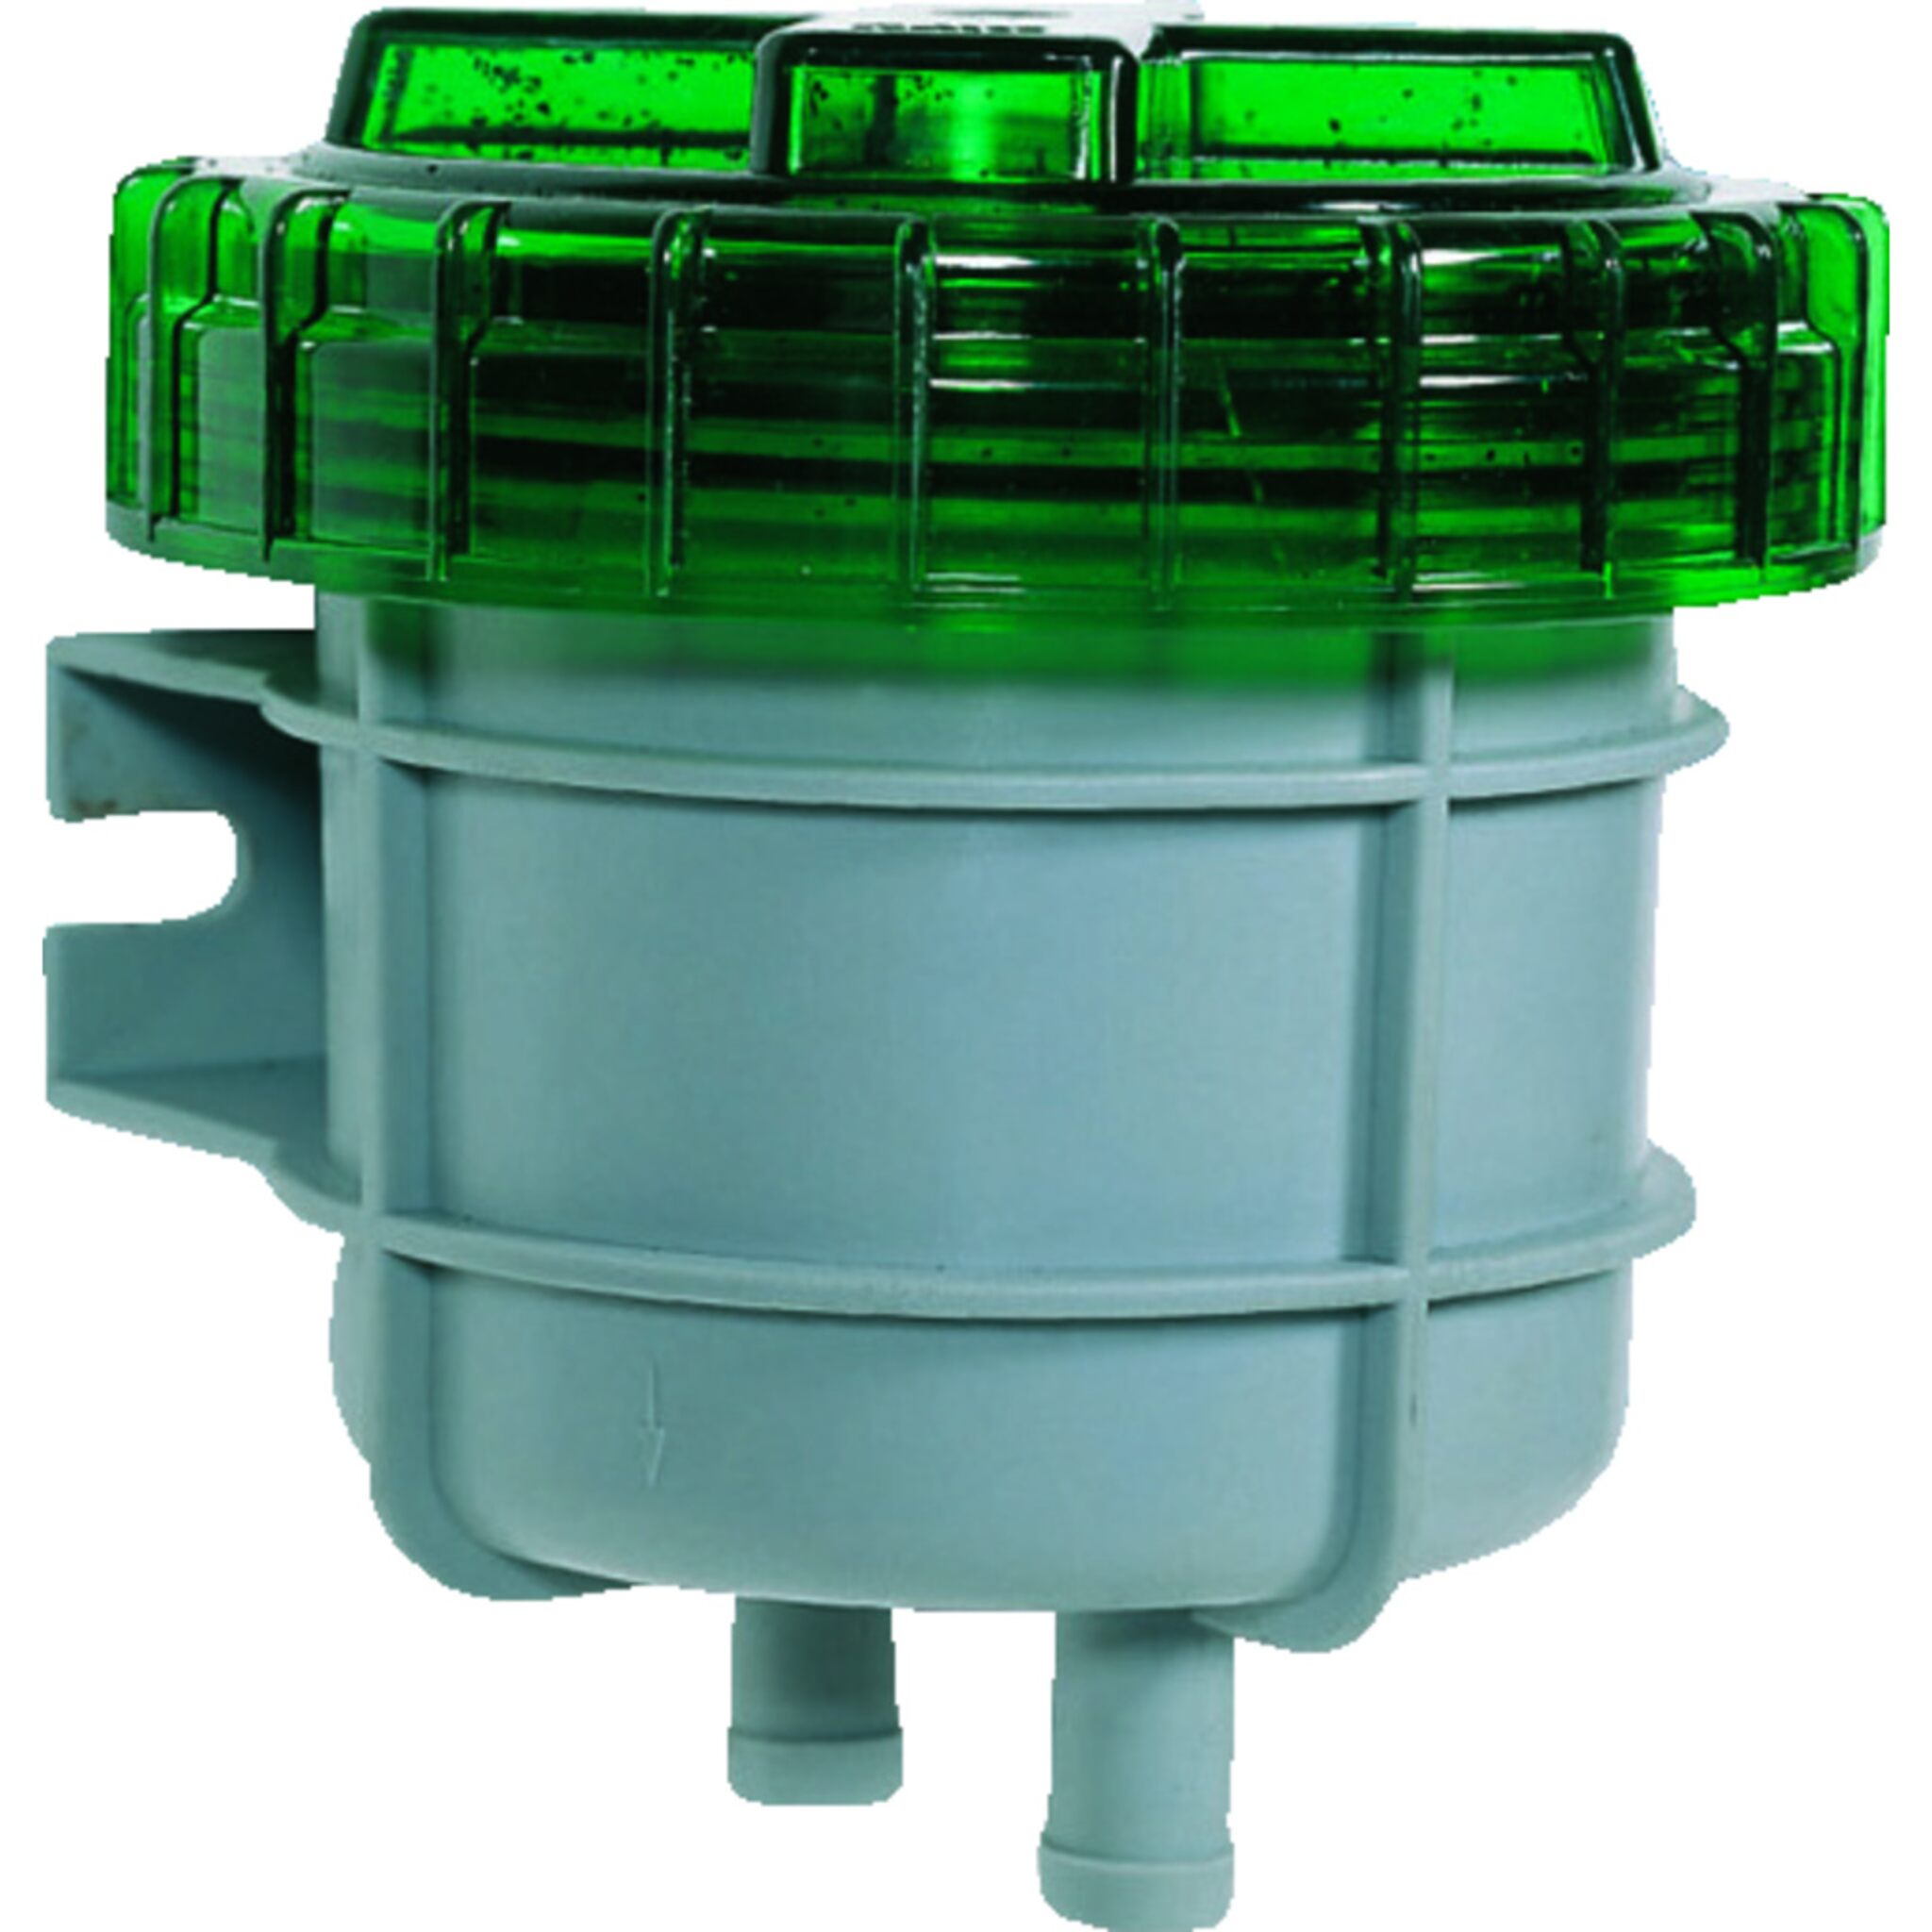 VETUS waste tank odor filter